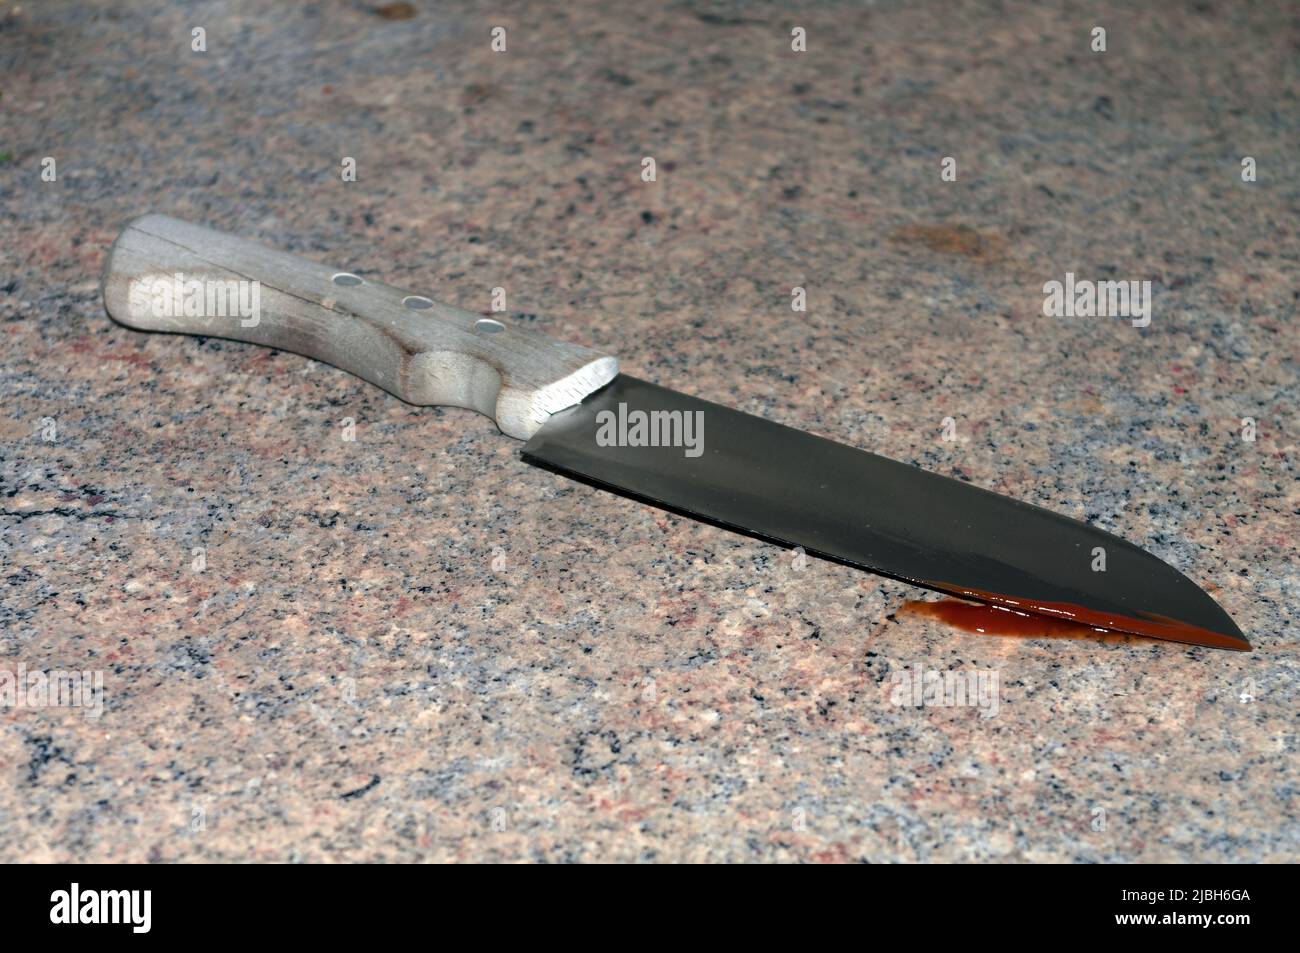 Immagine simbolica: Coltello con manico in legno e sangue sul tagliente Foto Stock